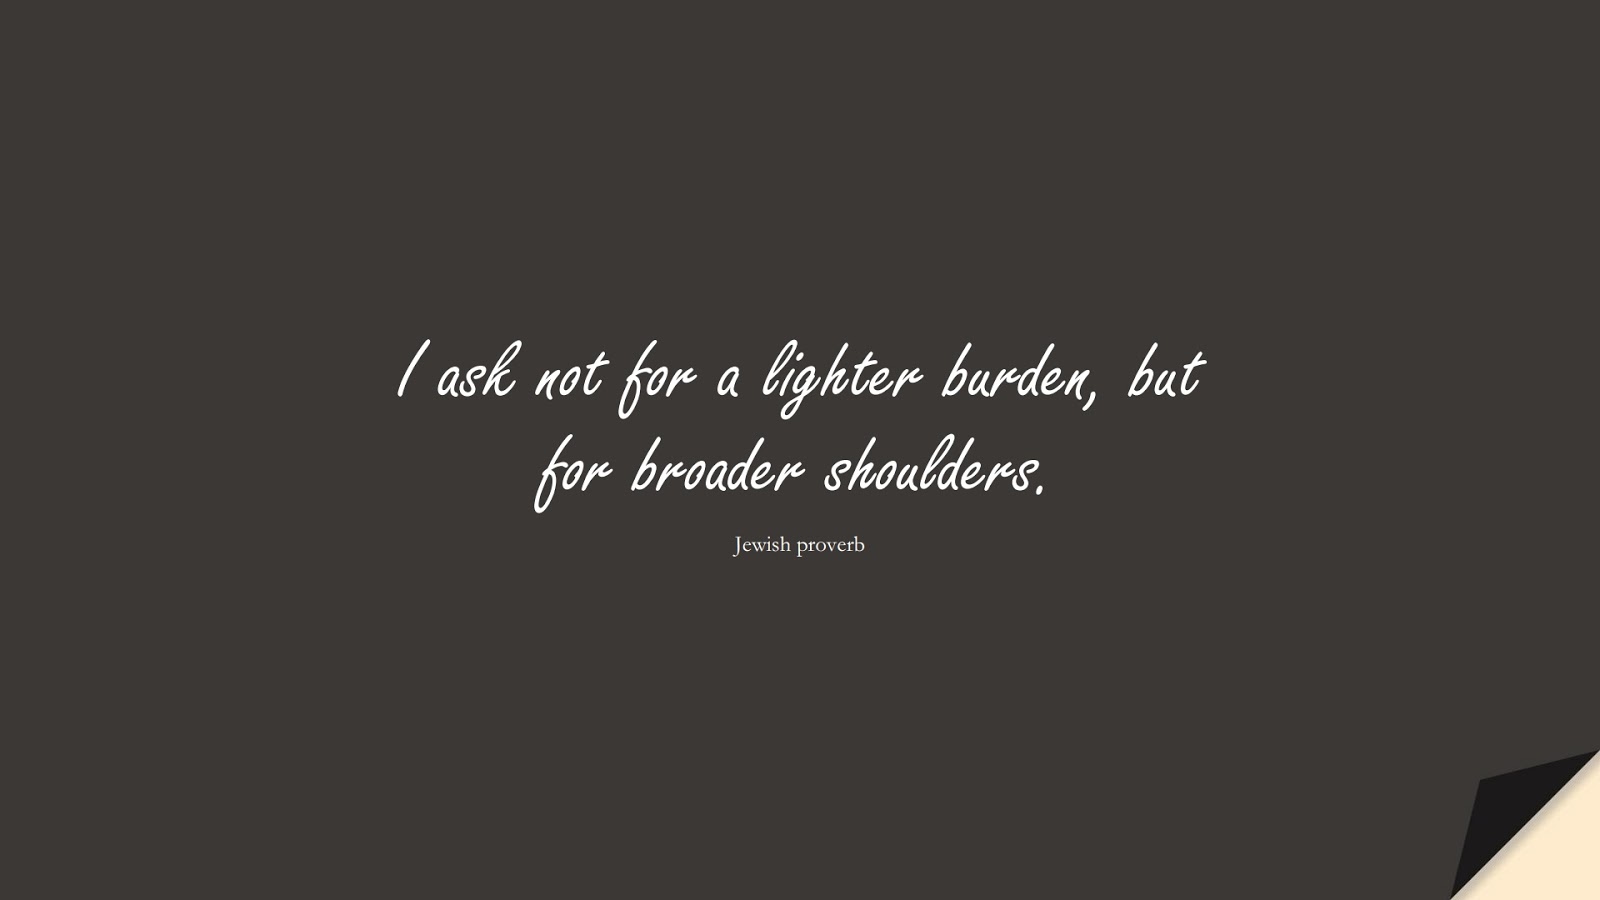 I ask not for a lighter burden, but for broader shoulders. (Jewish proverb);  #PositiveQuotes